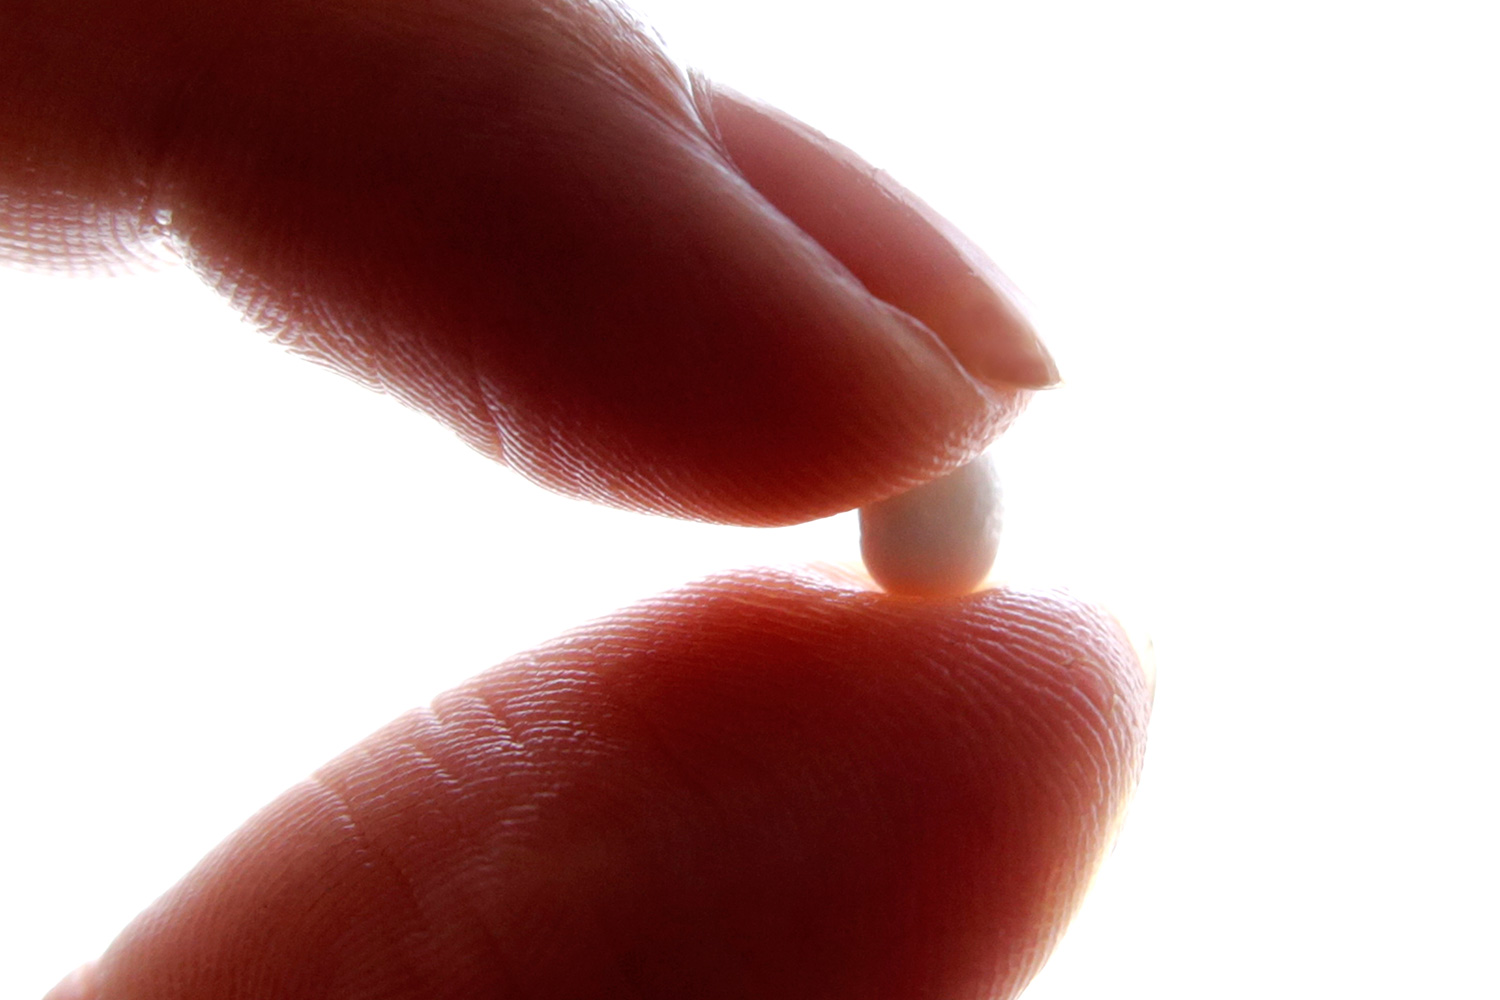 Un estudio demuestra que la píldora anticonceptiva provoca depresión